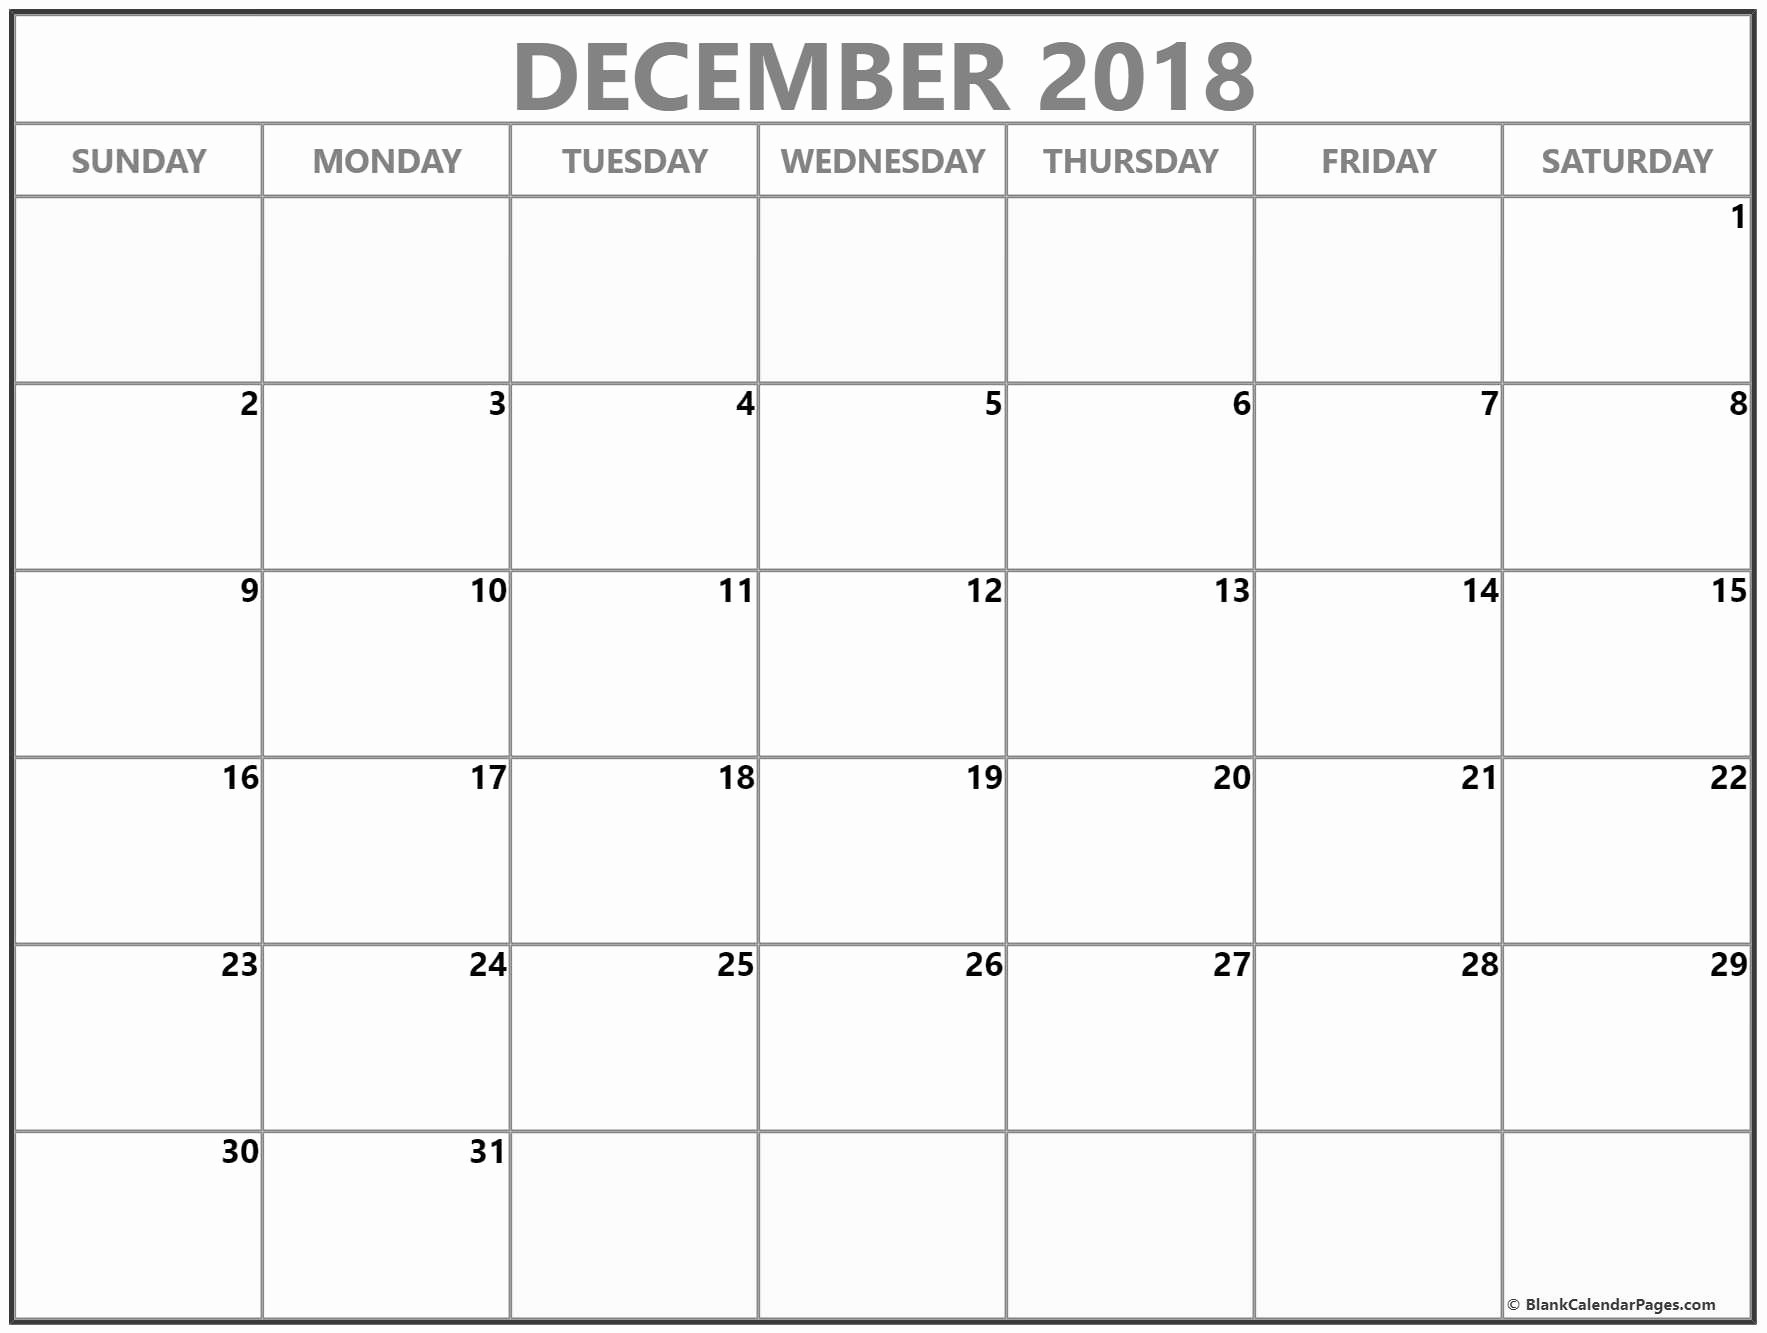 CAL=December 2018 calendar